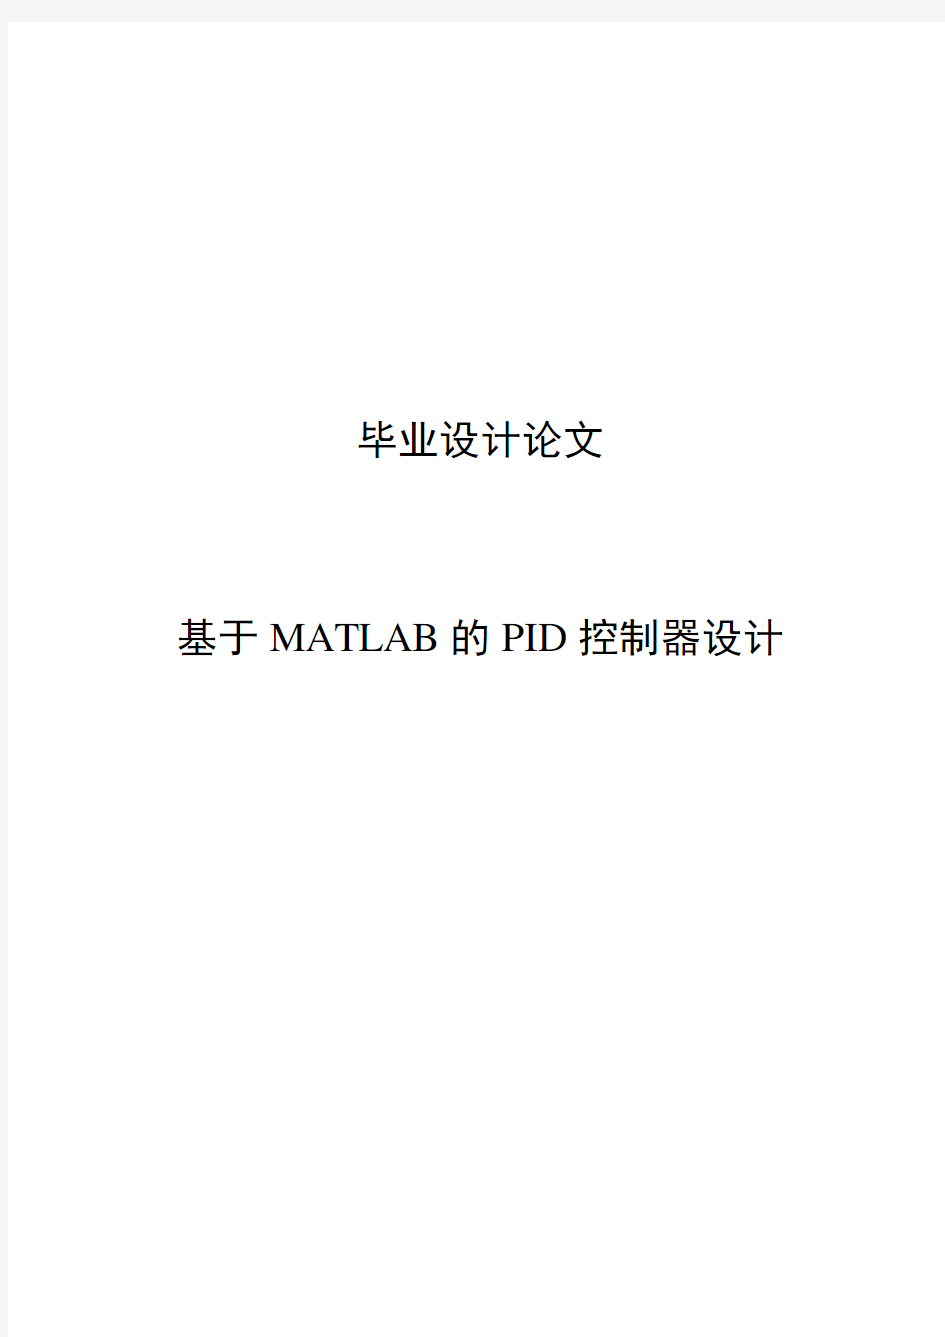 基于MATLAB的PID控制器设计毕业设计(论文)